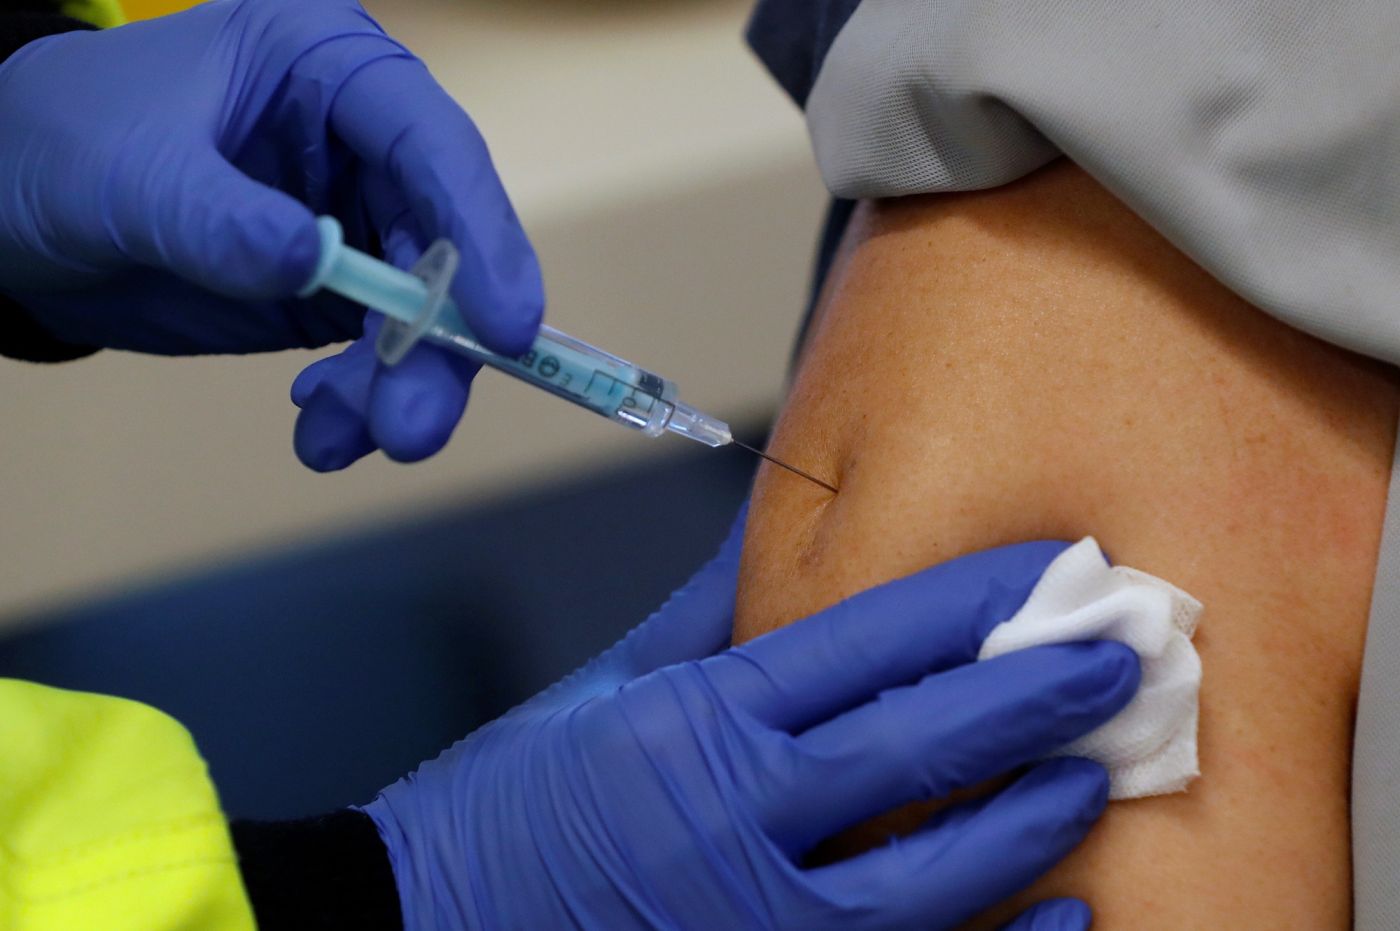 Οι… ειδικοί θέλουν και 4η δόση εμβολίου κατά του κορωνοϊού – Ποιους βάζουν «στόχο» σε αυτή την φάση